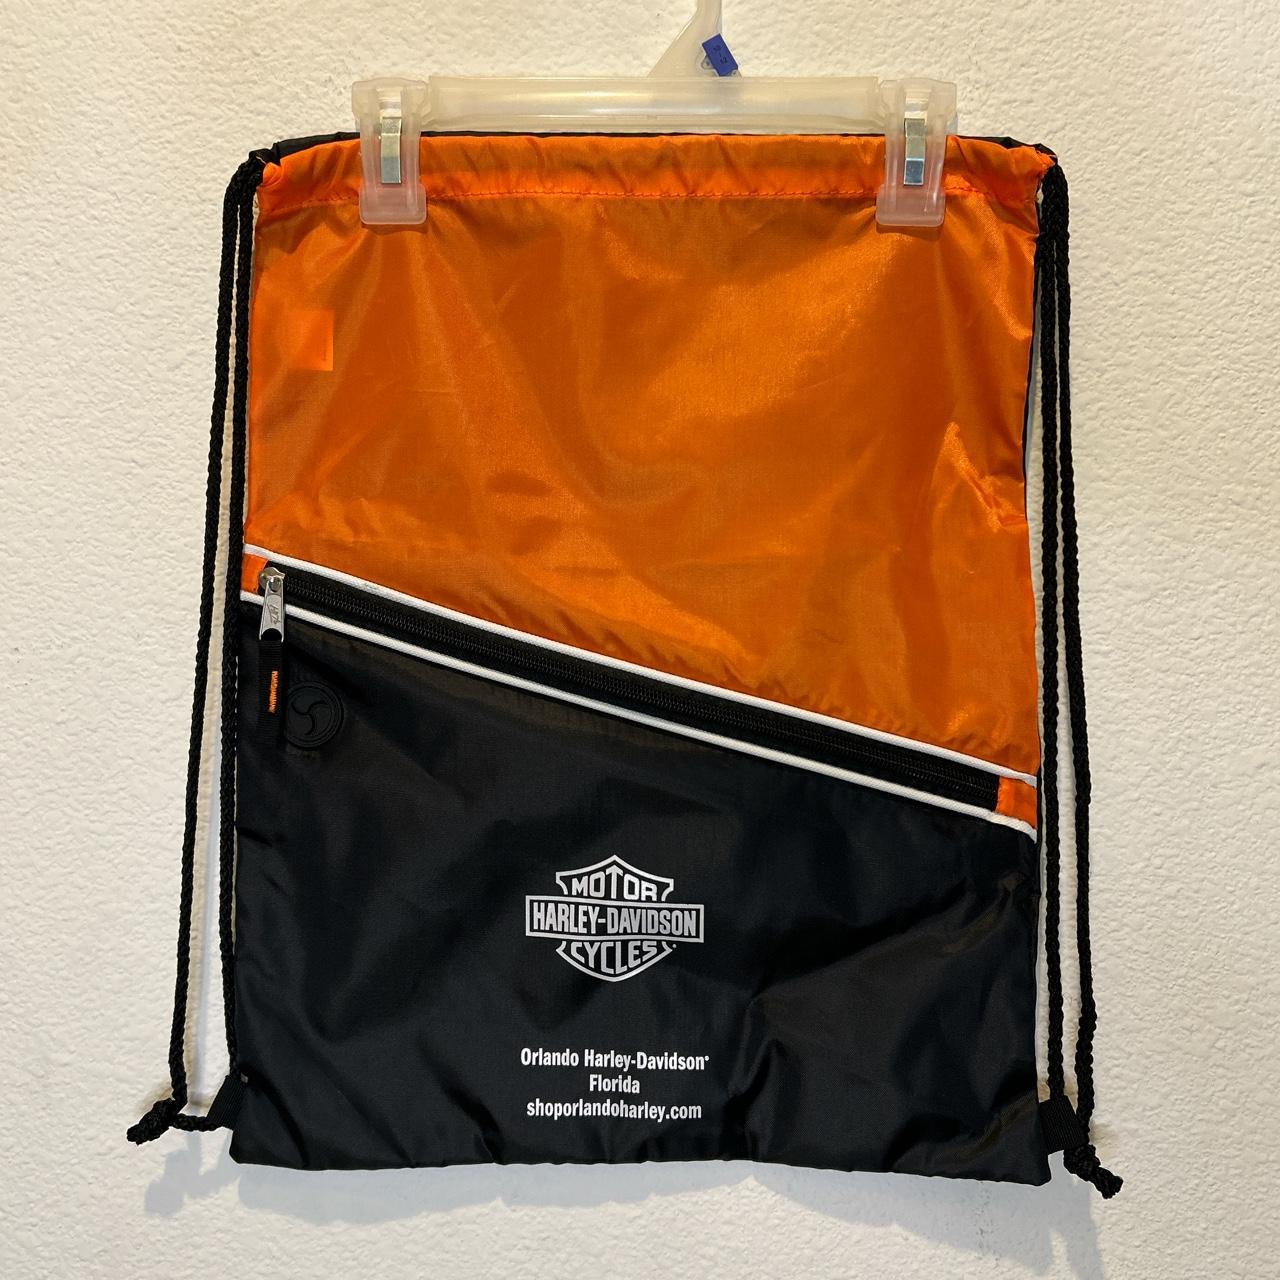 Harley Davidson Men's Clutch Bag